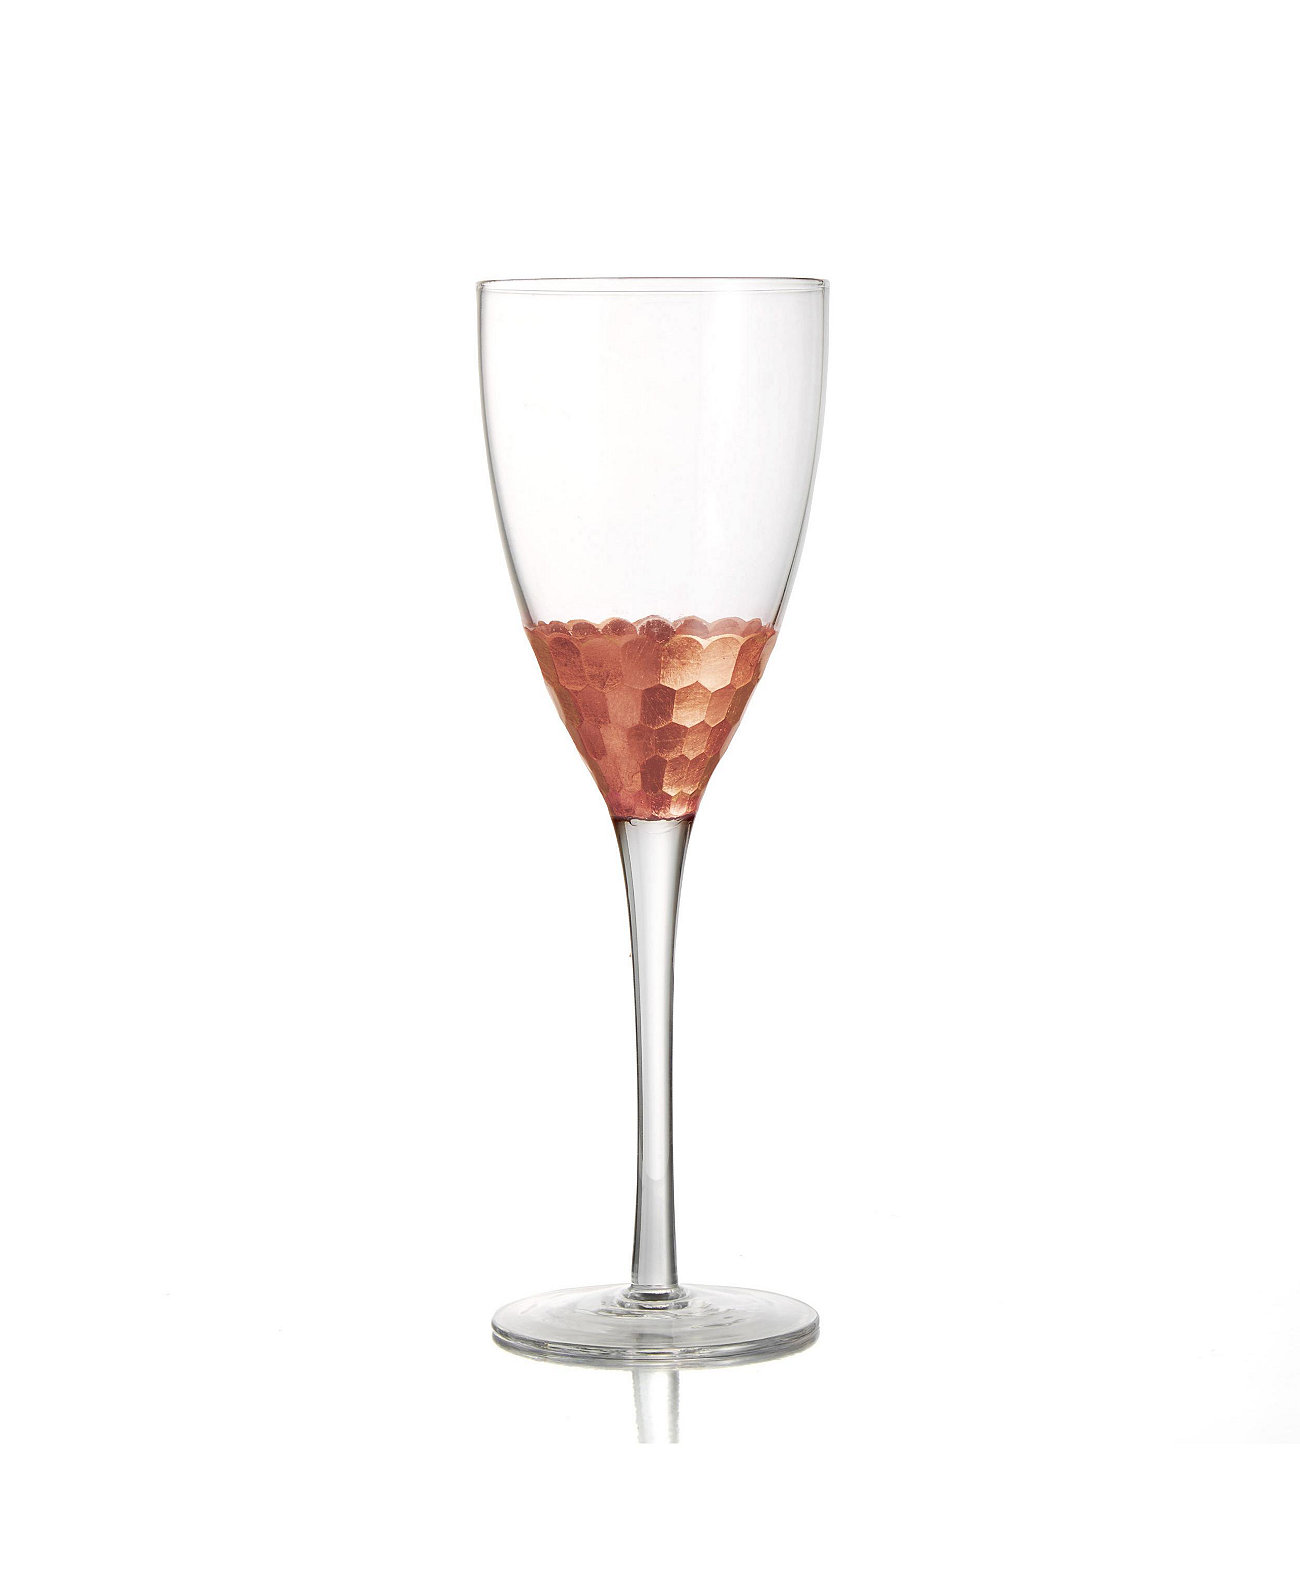 Медные бокалы для вина Daphne — набор из 4 шт. JAY IMPORTS